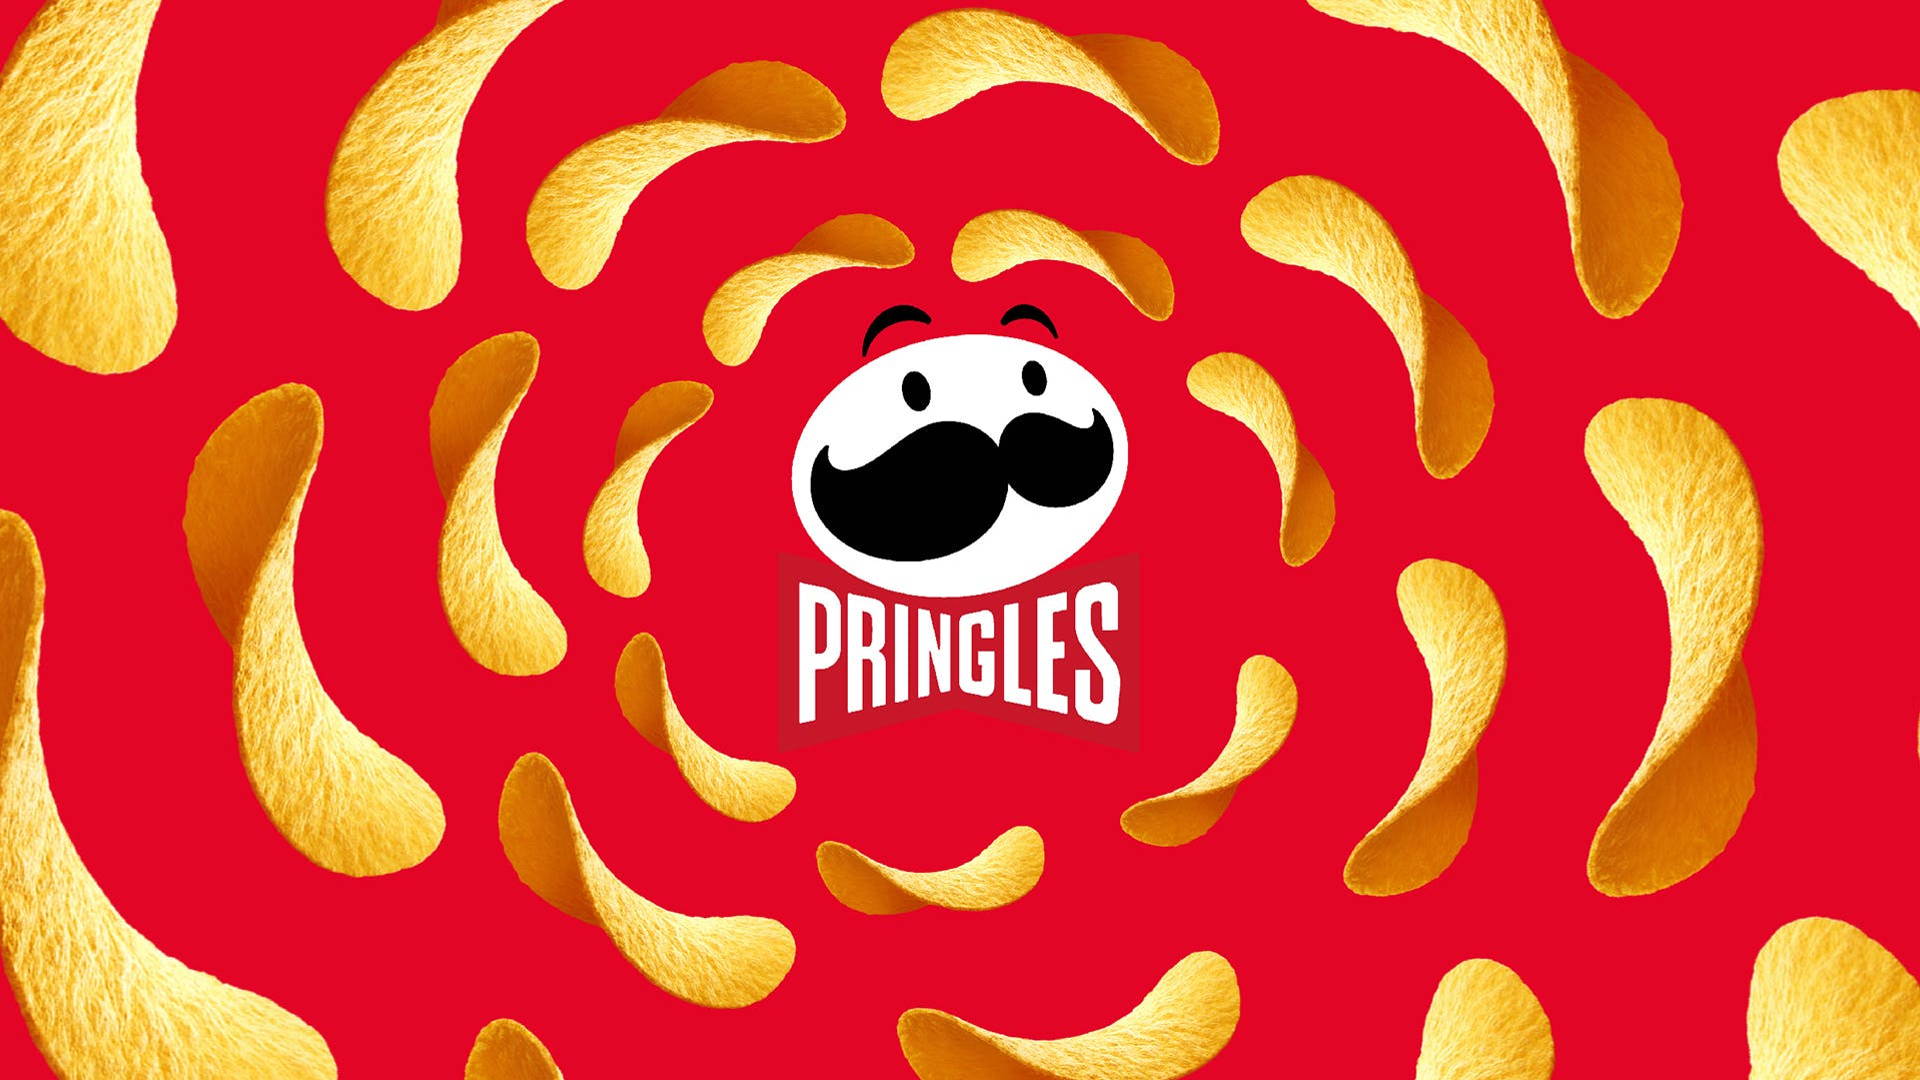 JKR's Brand Refresh Of Chip Brand Pringles Hits UK Shores | Dieline ...